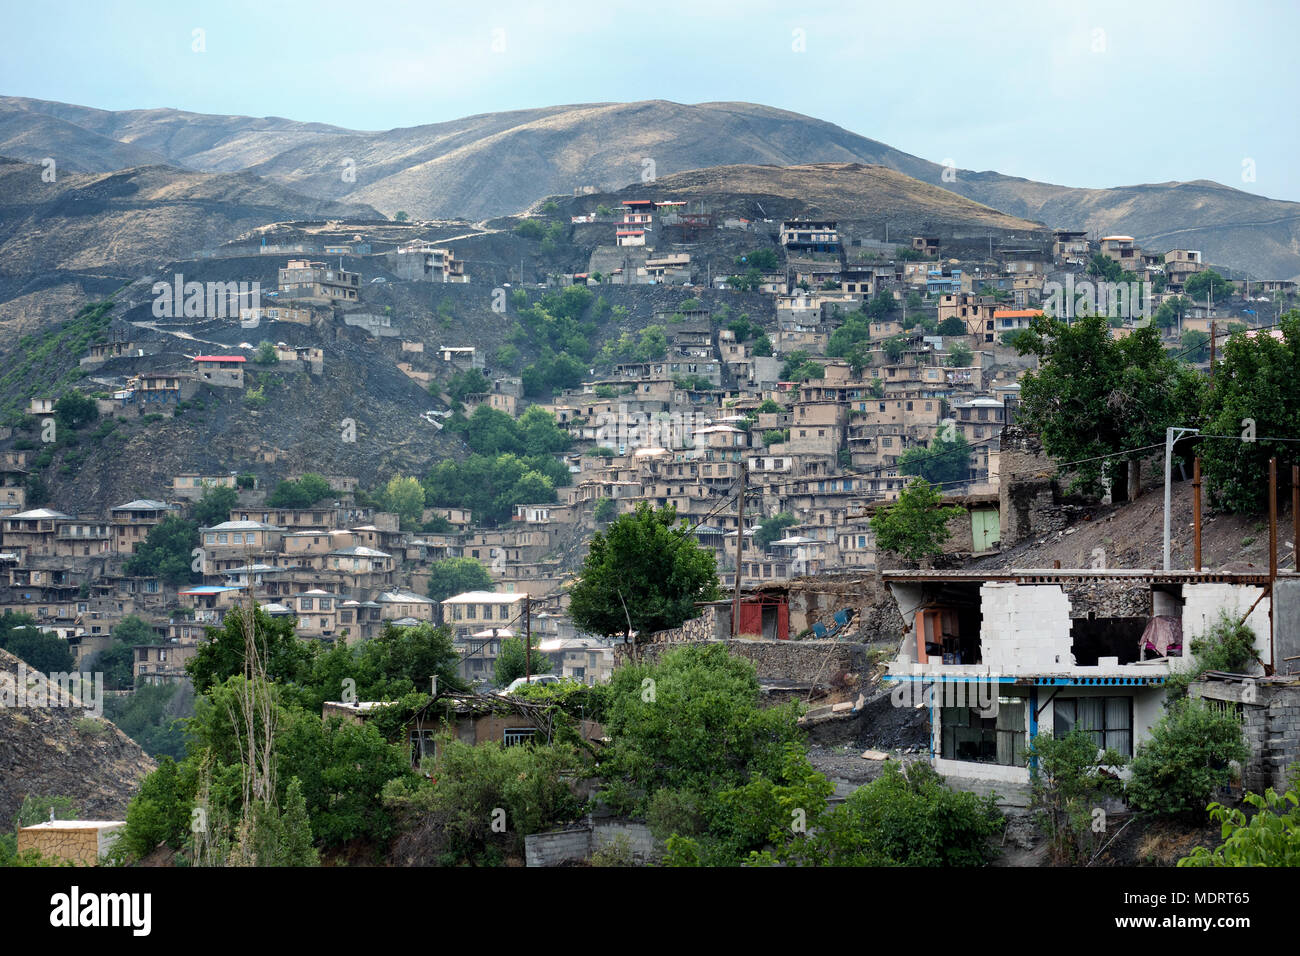 Kang, a stepped village on the mountains around Mashhad, Iran Stock Photo